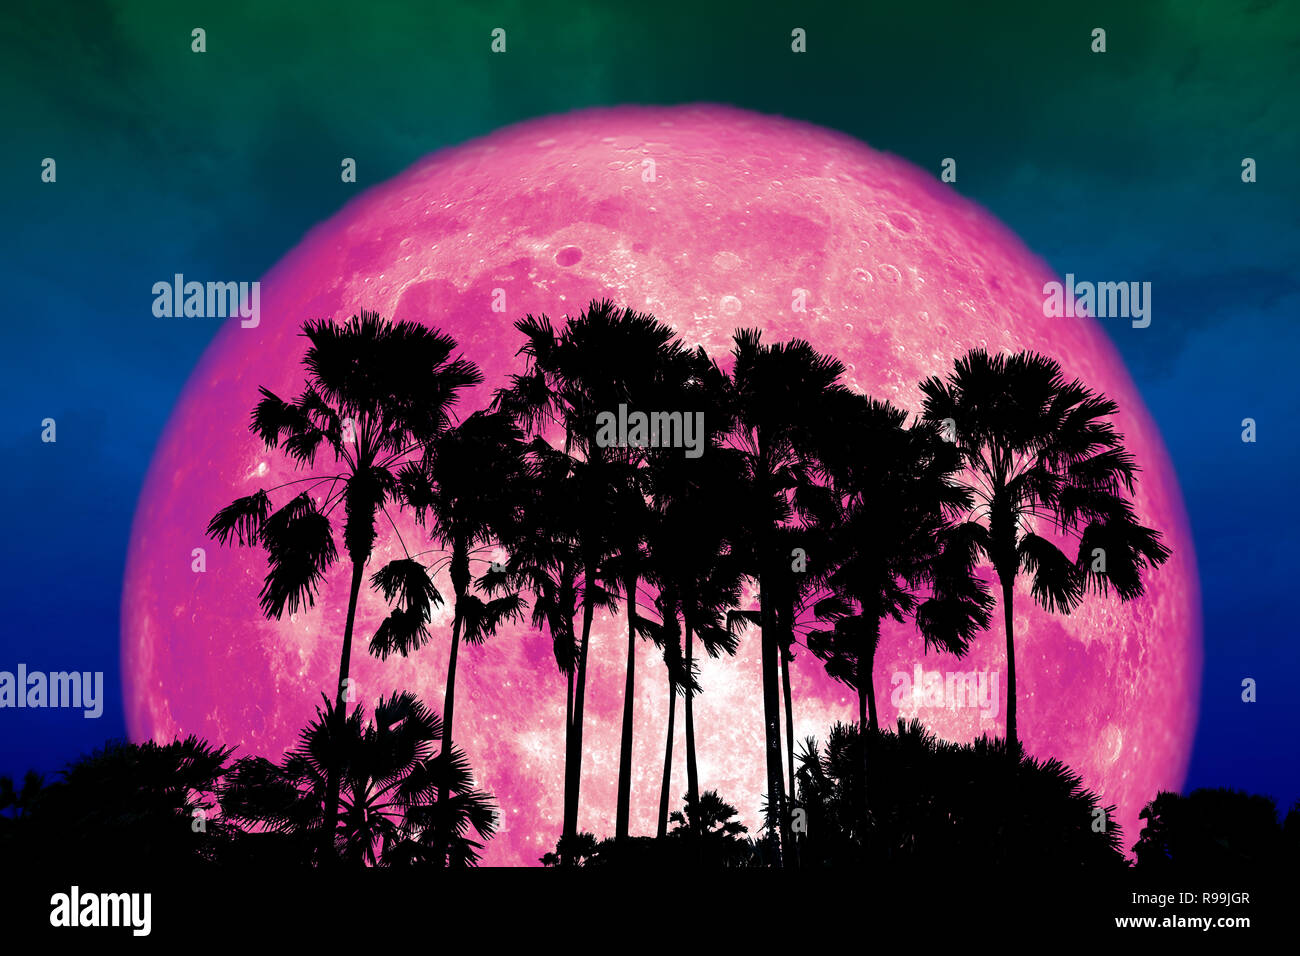 Super voller rosa Mond zurück Silhouette hohe Palme in dunklen Nachthimmel, Elemente dieses Bild von der NASA eingerichtet Stockfoto